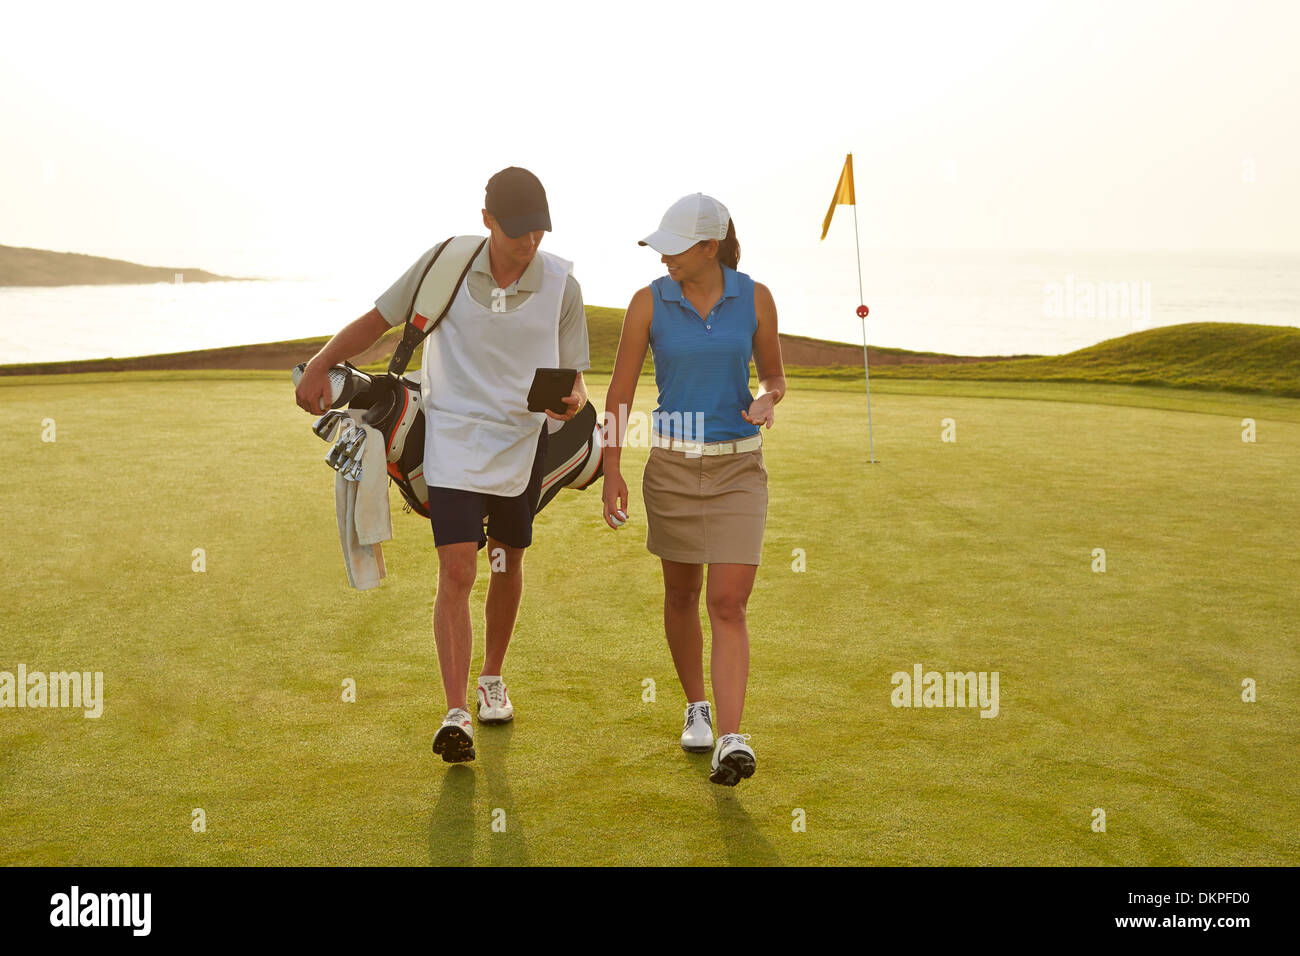 Il Golfer e compartimento camminando sul campo da golf Foto Stock